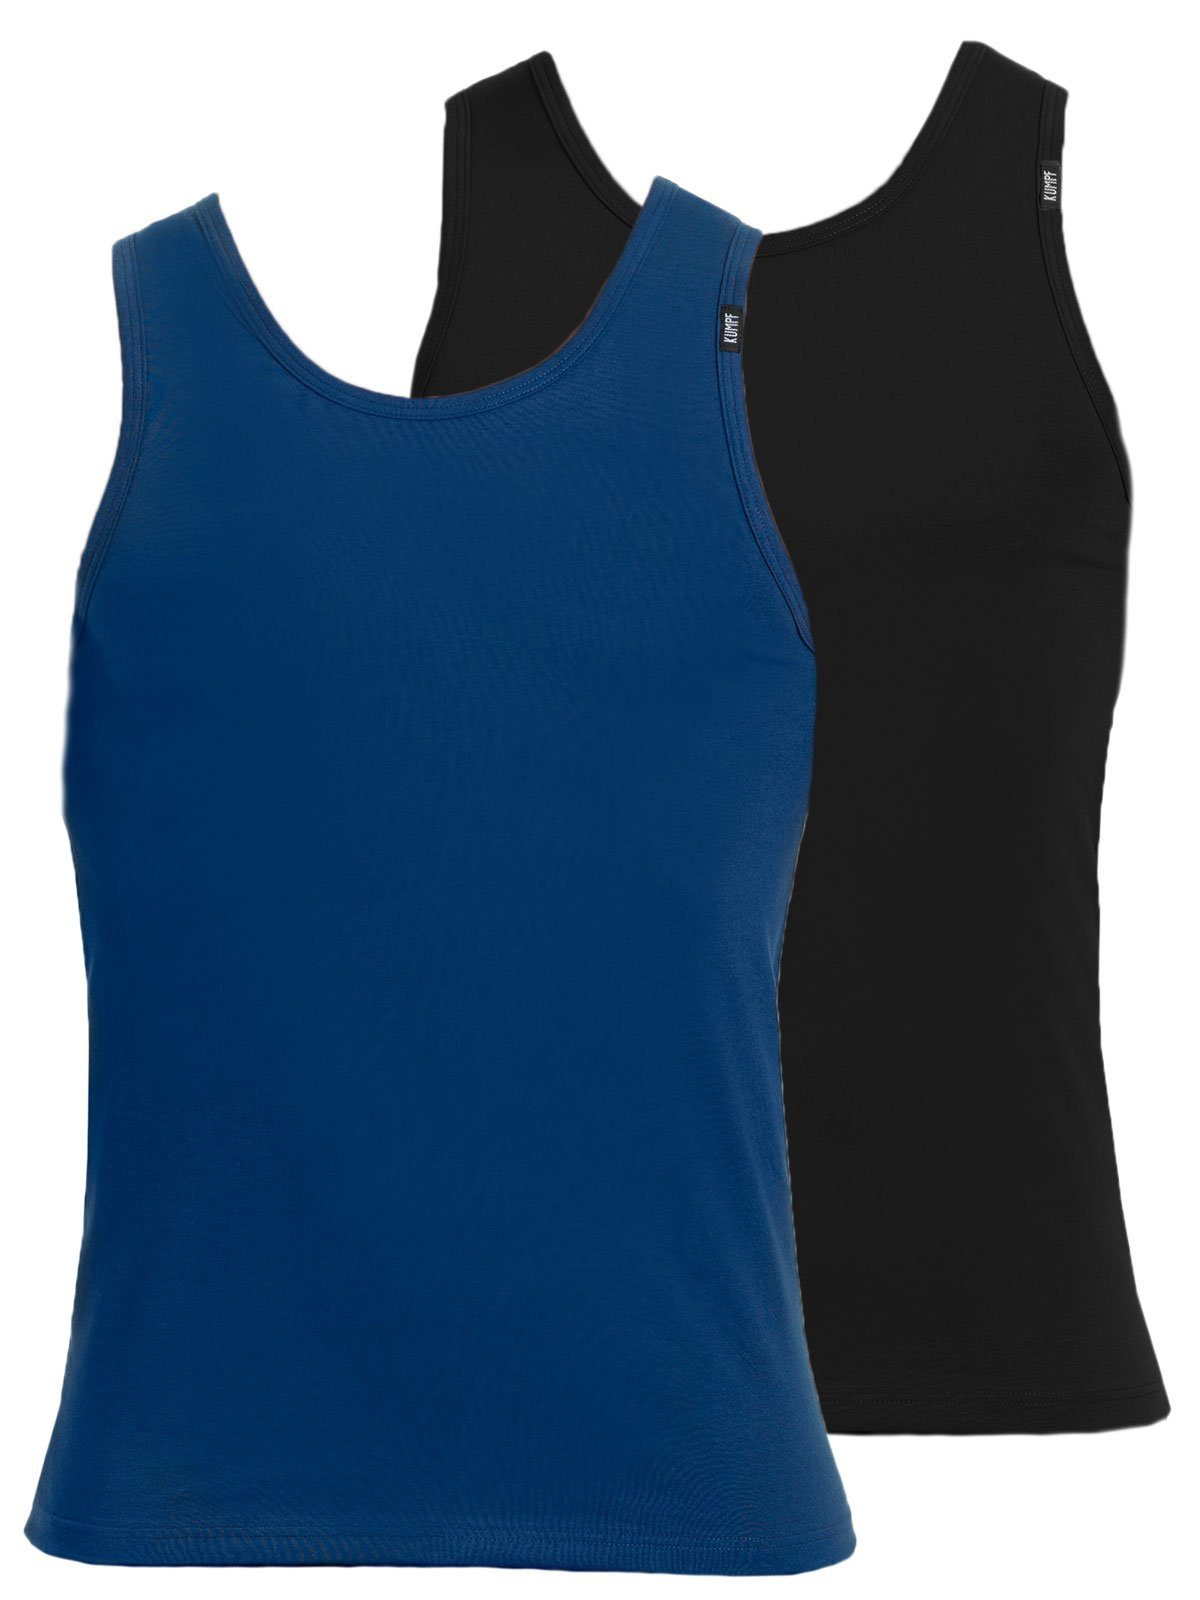 KUMPF Achselhemd 2er Sparpack Herren Markenqualität 2-St) darkblue Unterhemd Cotton Bio schwarz (Spar-Set, hohe